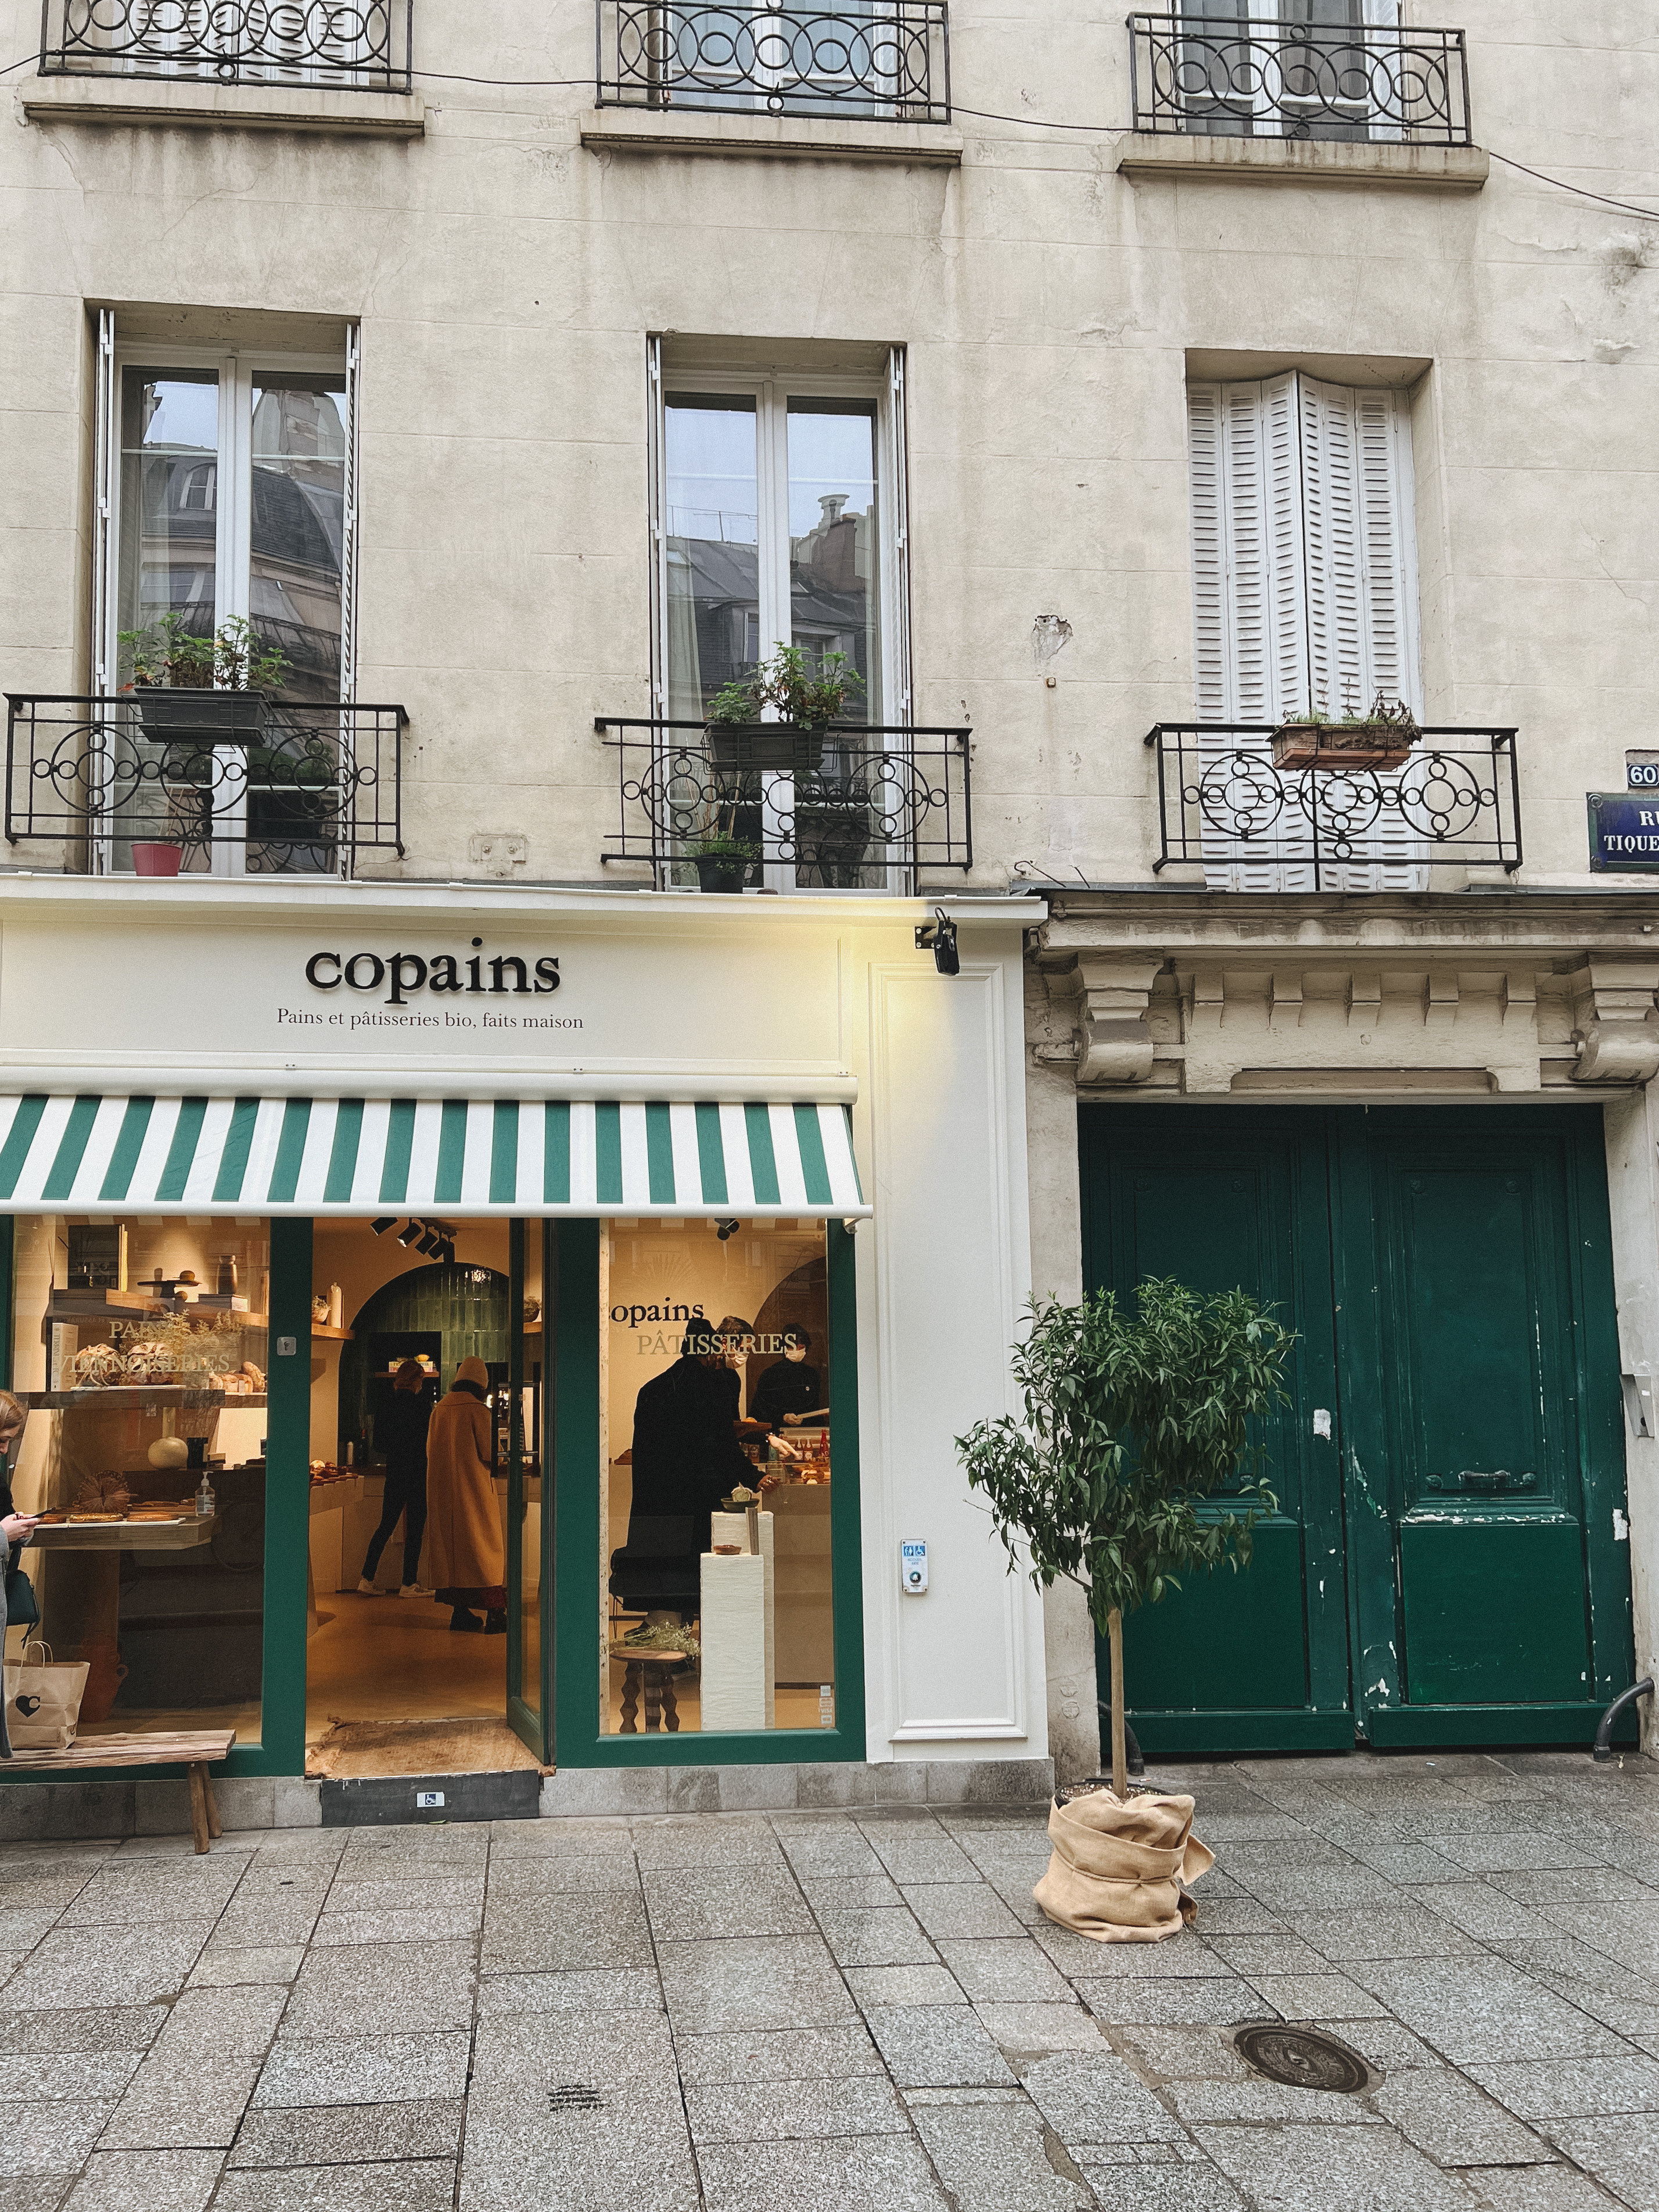 COPAINS CAFE & PATISSERIES, PARIS